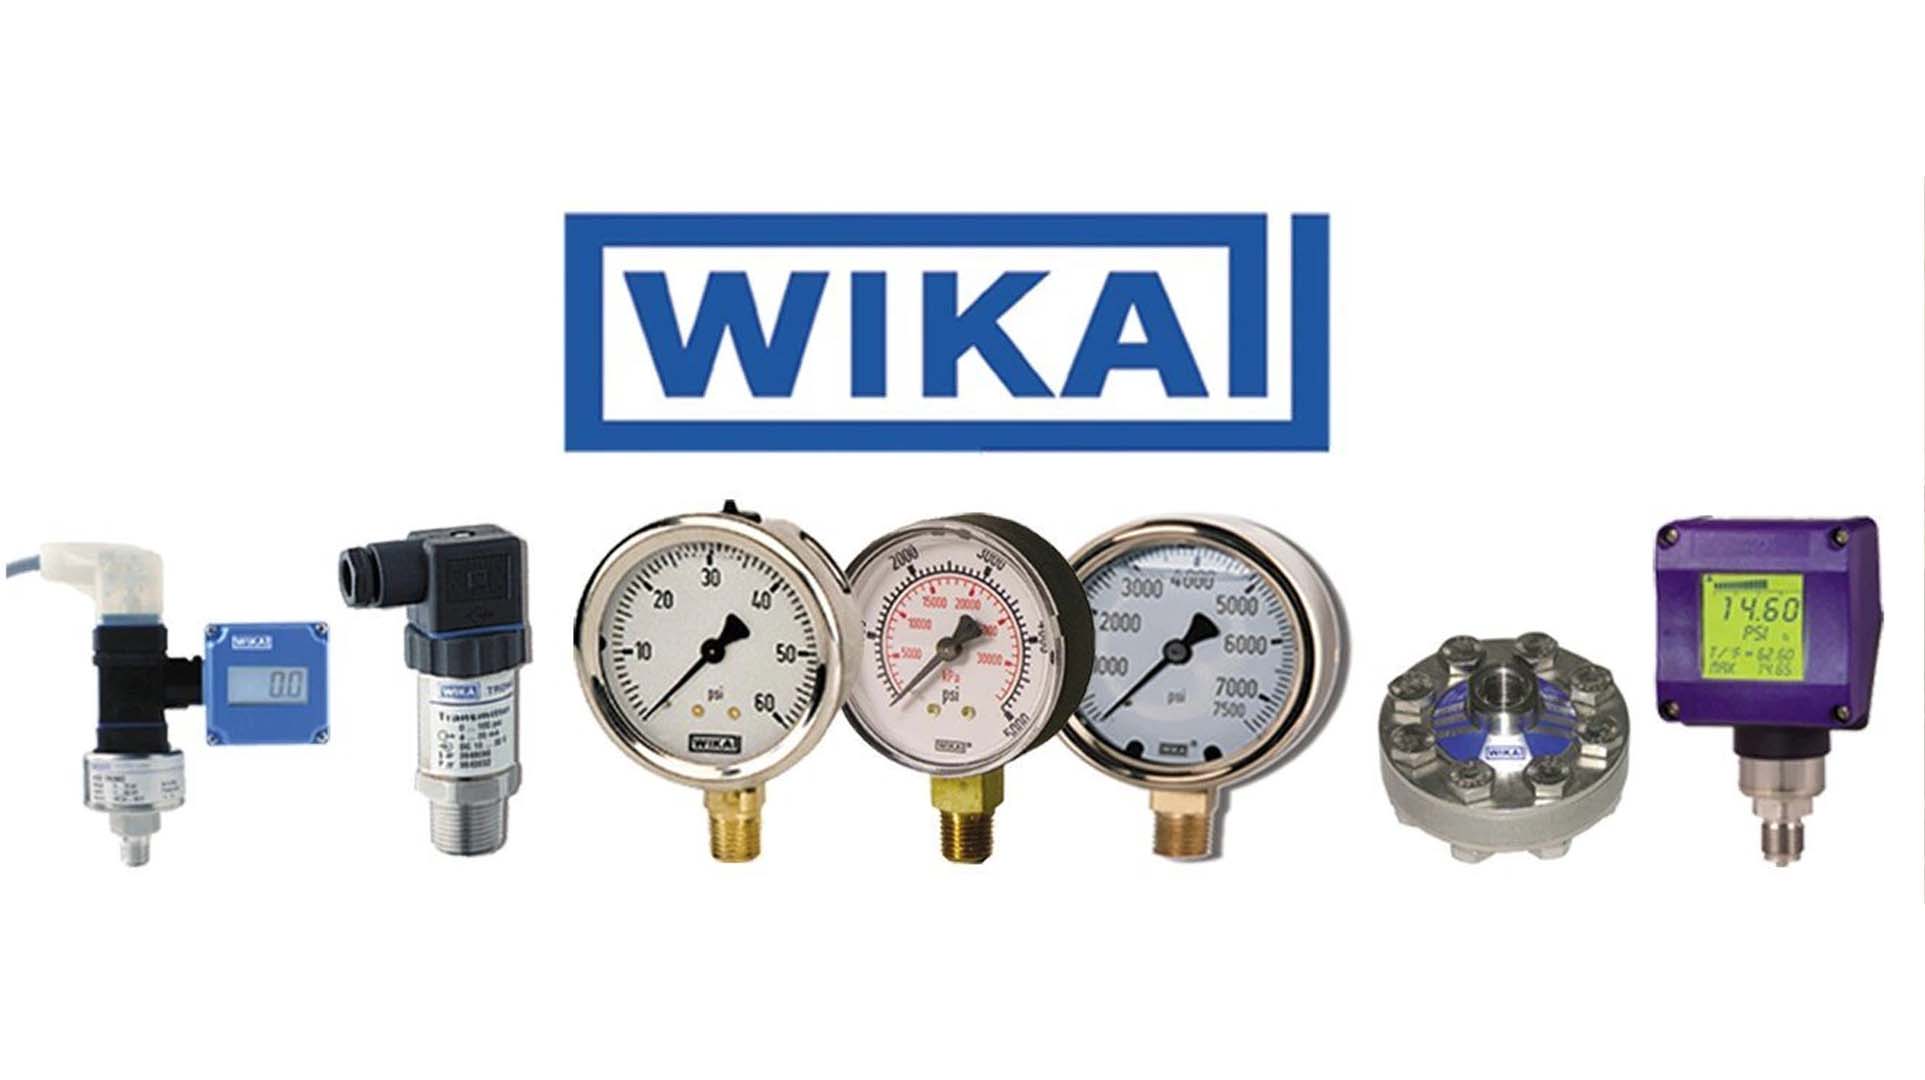 گیج فشار ویکا (WIKA) 0-16 بار صفحه 10 سانتی متر (ORIGINAL)